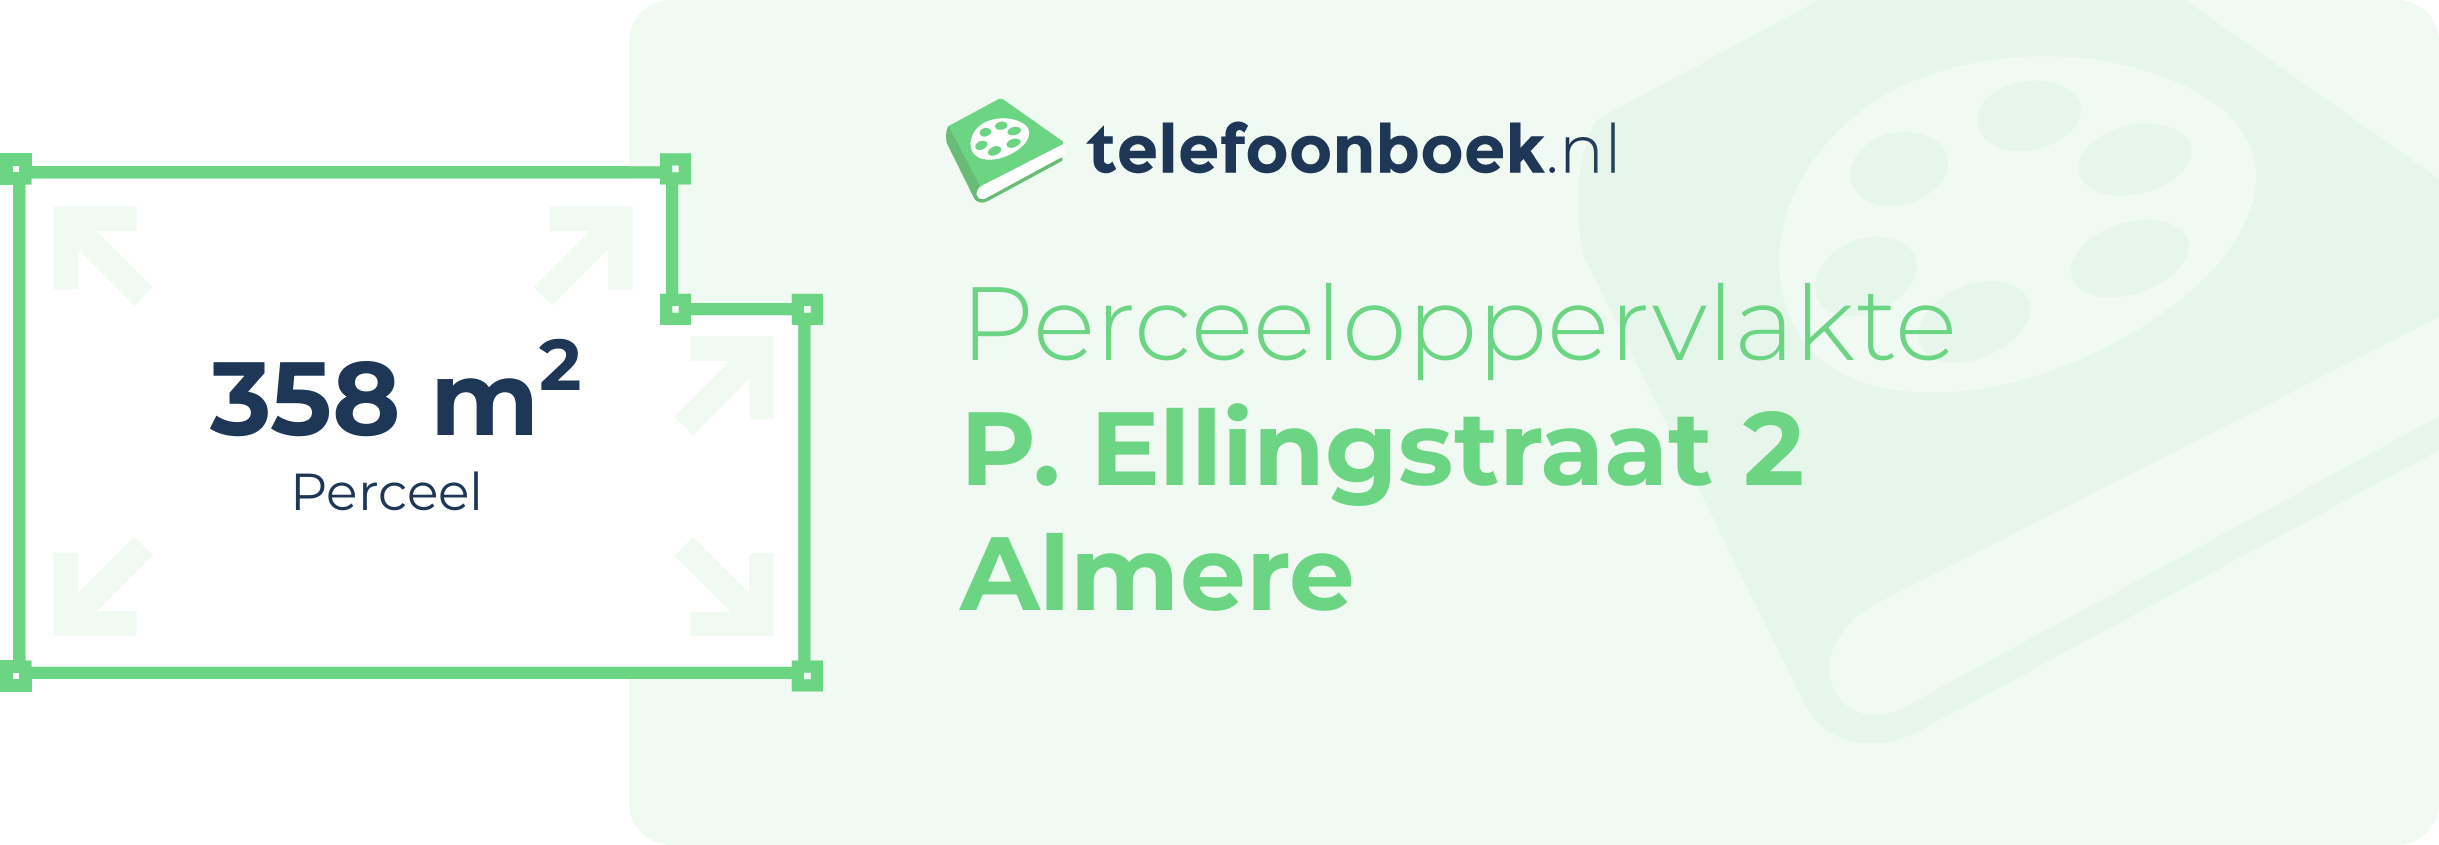 Perceeloppervlakte P. Ellingstraat 2 Almere